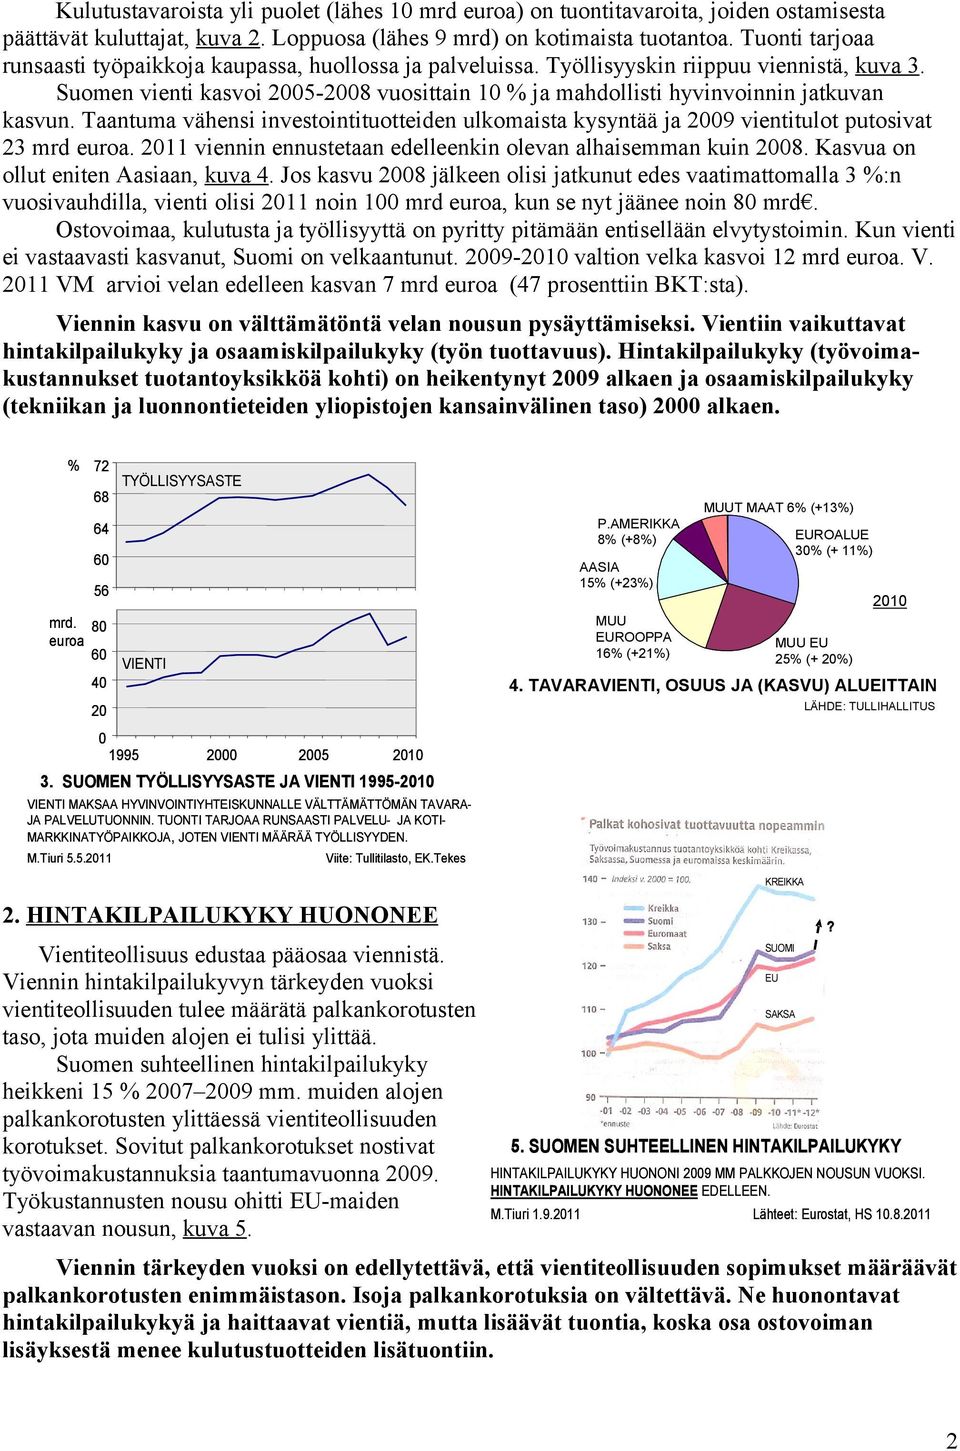 Suomen vienti kasvoi 2005-2008 vuosittain 10 % ja mahdollisti hyvinvoinnin jatkuvan kasvun. Taantuma vähensi investointituotteiden ulkomaista kysyntää ja 2009 vientitulot putosivat 23 mrd euroa.